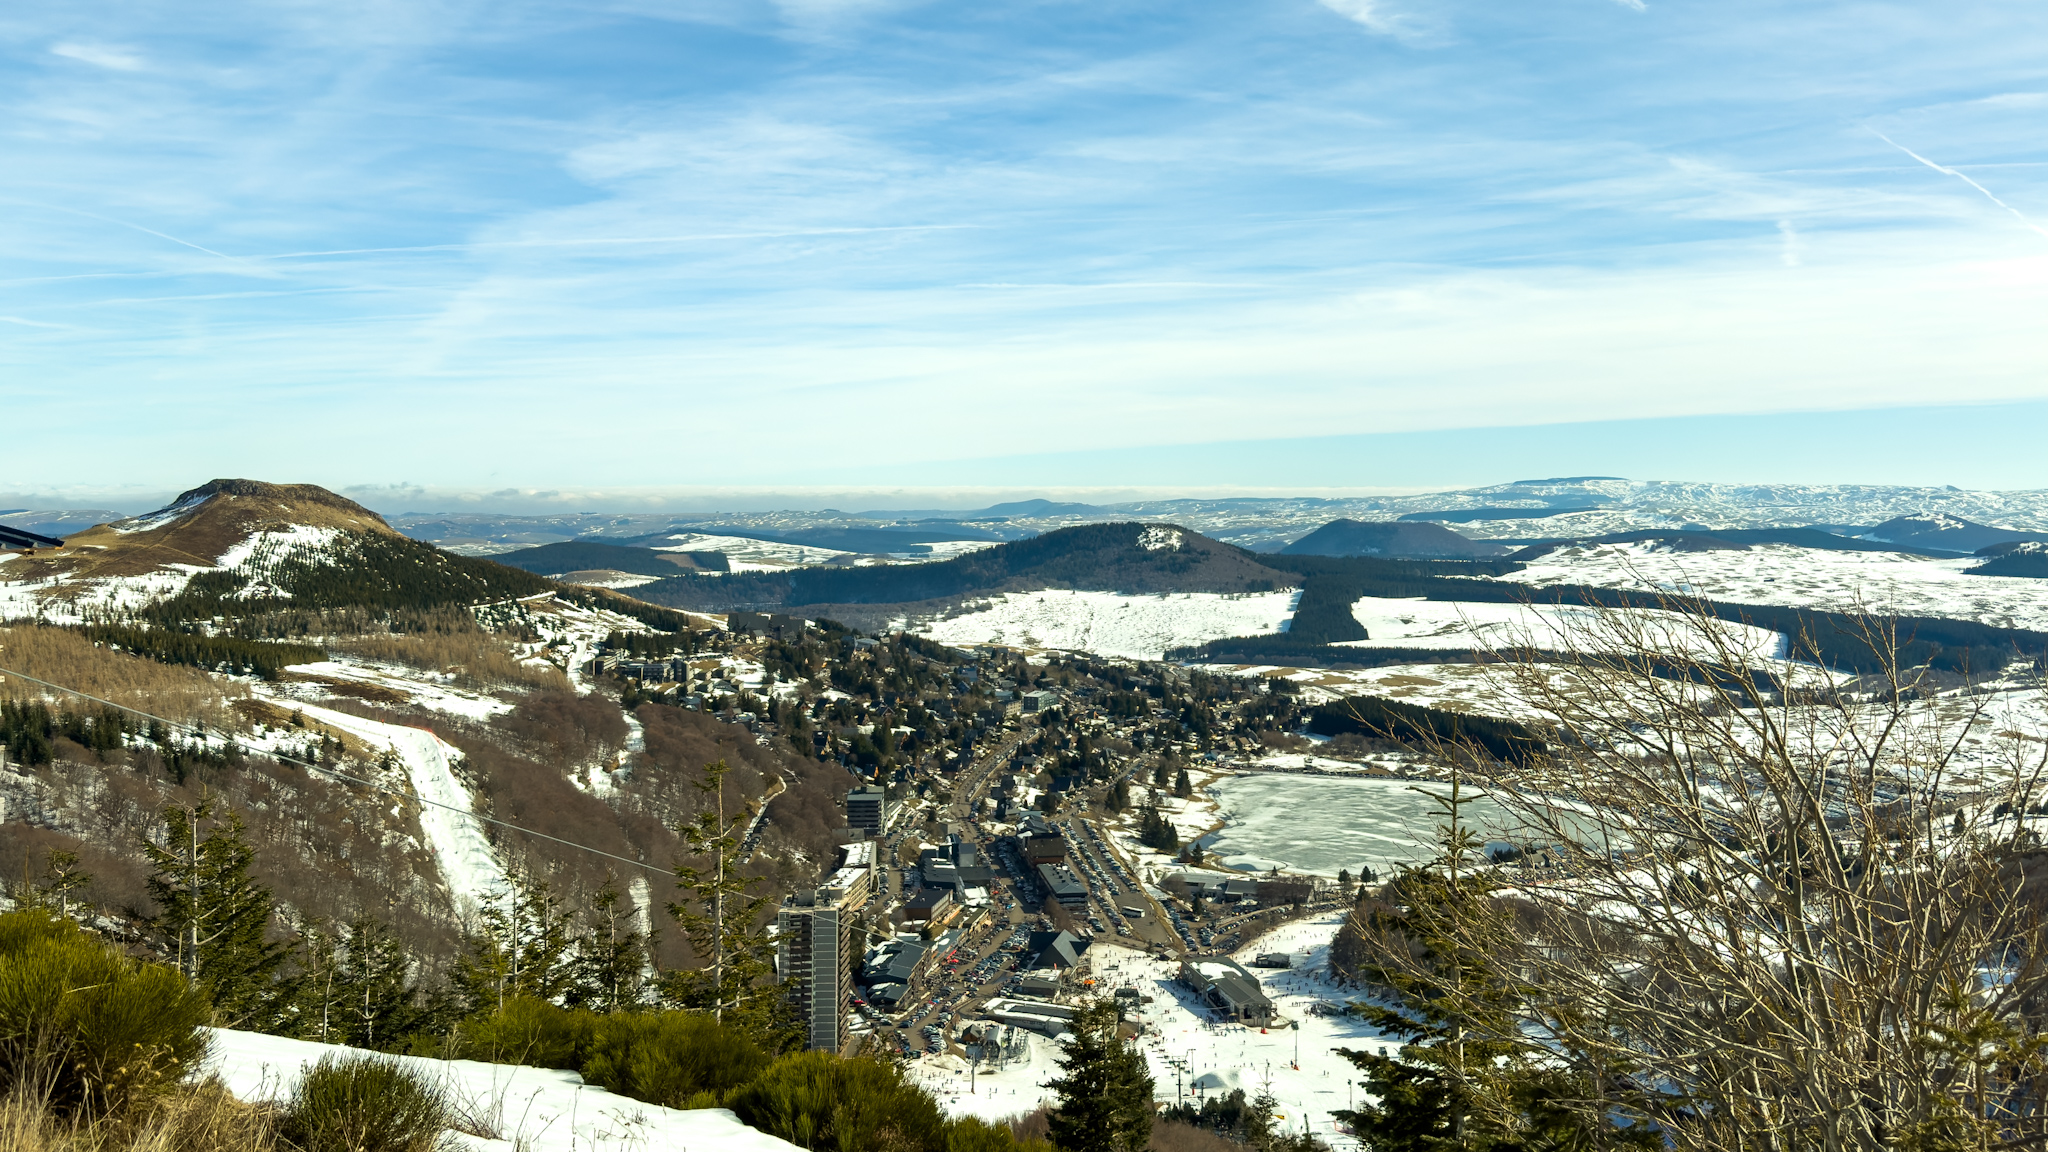 Station de ski de Super Besse, vue panoramique du Puy du Chambourguet et de la Station de Super Besse